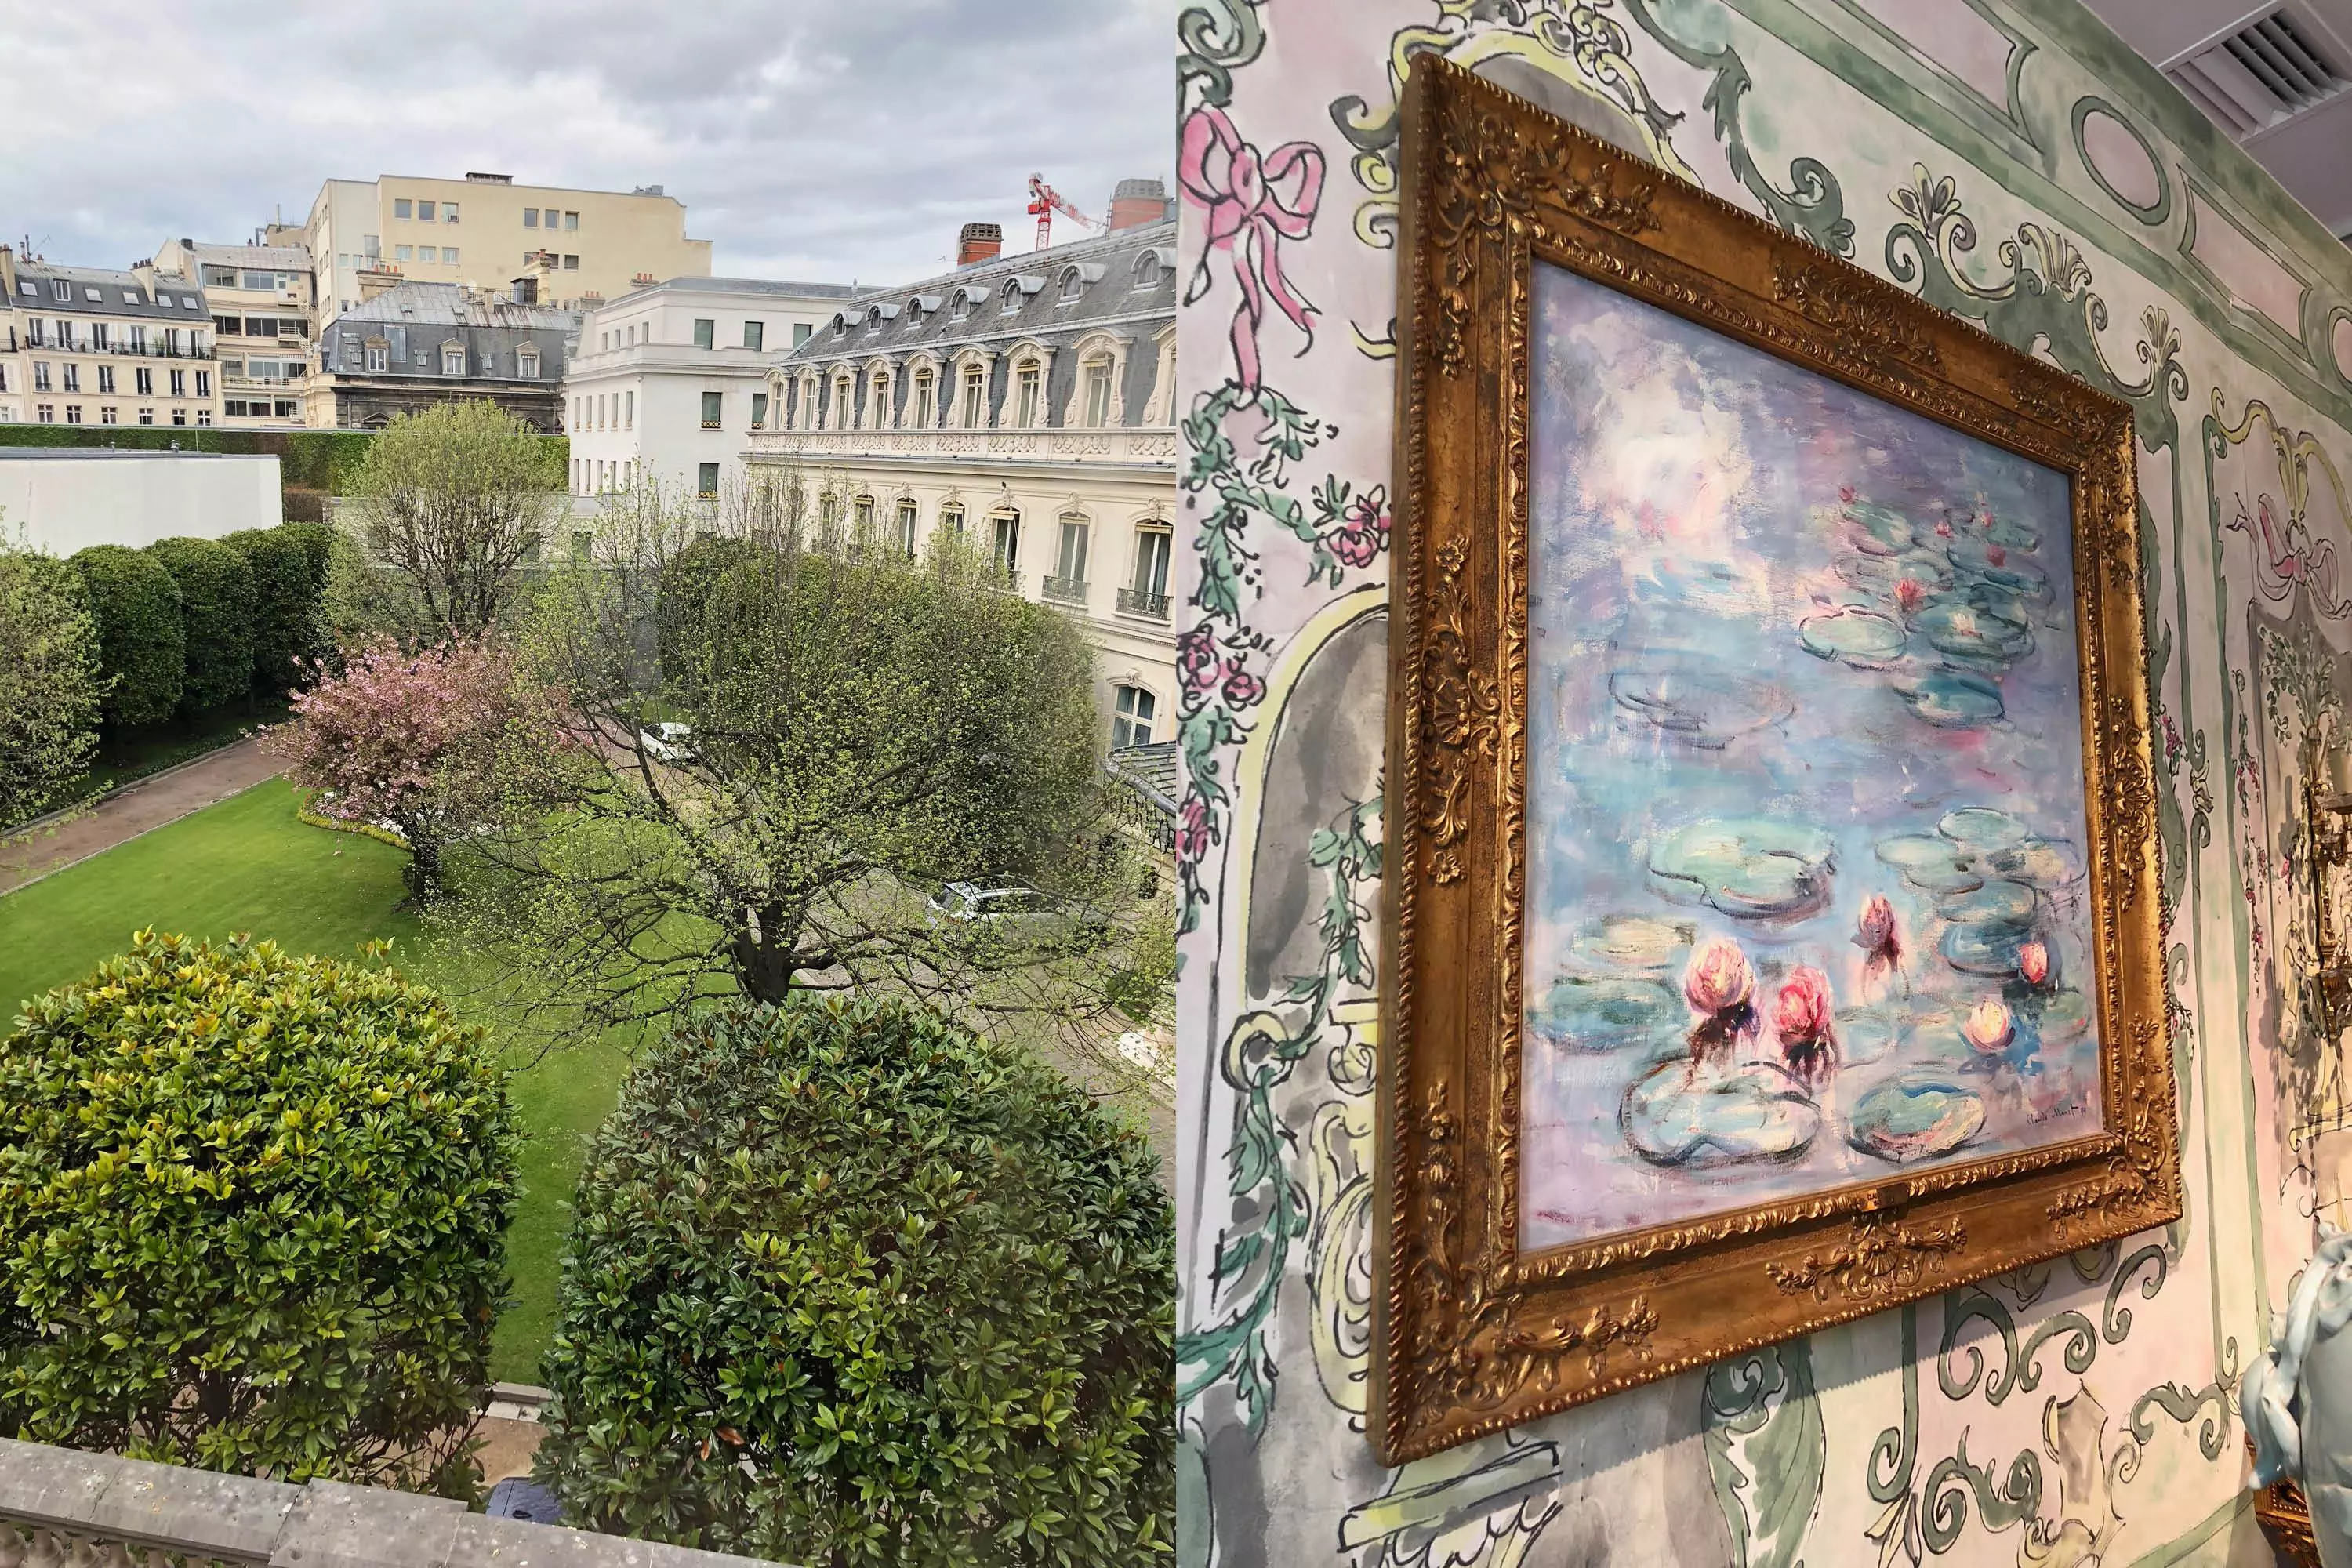 Artcurial, ritz, auction house, Paris, Monet